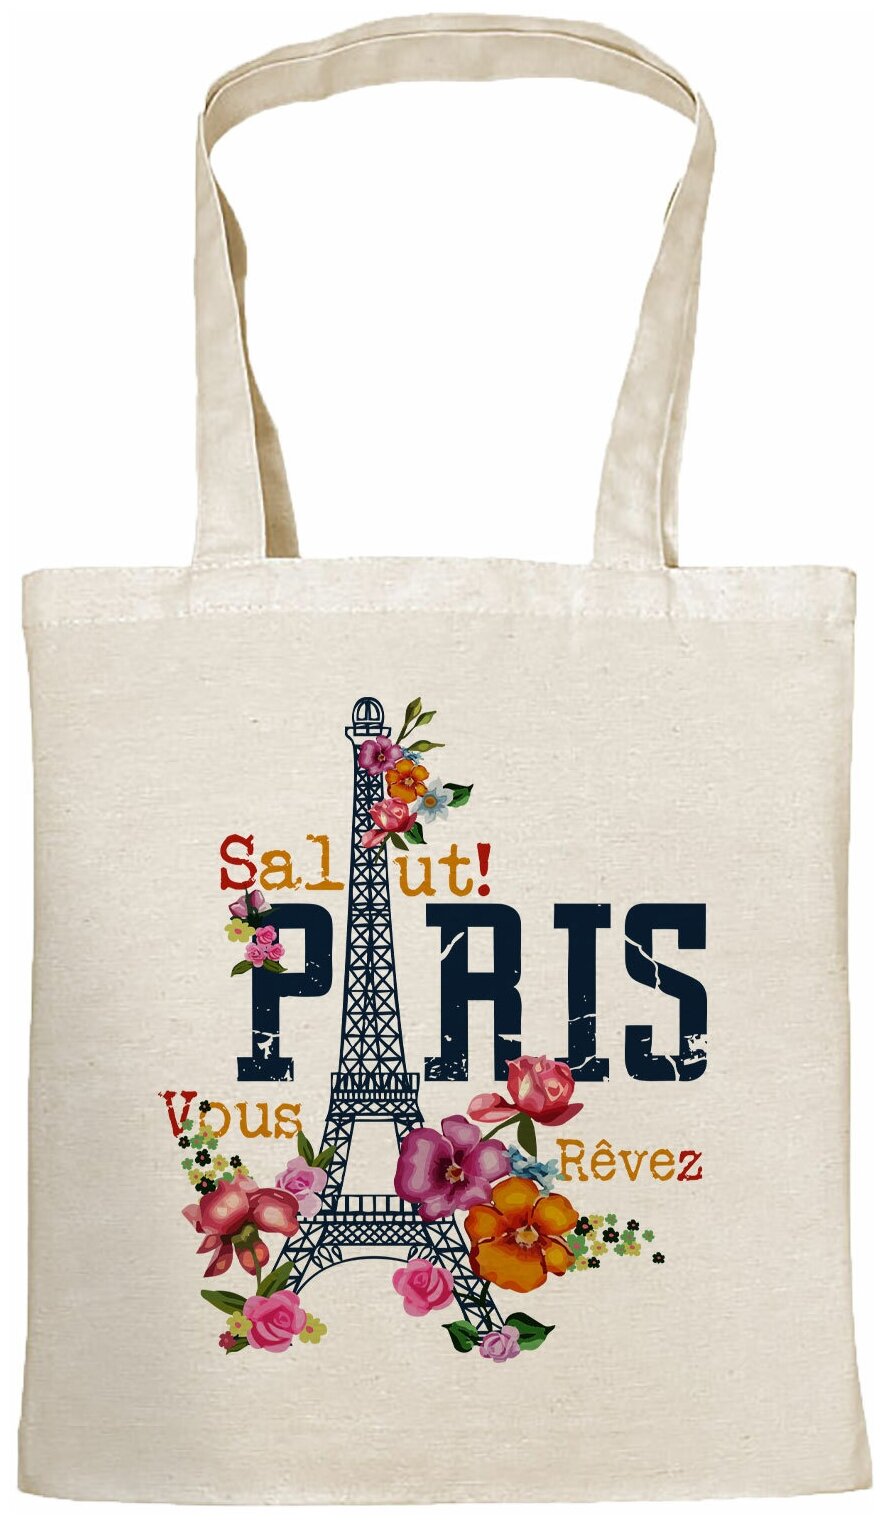 Сумка шоппер Gerasim шоппер с принтом "Salut Paris!" шопер авоська холщовая с рисунком в подарок